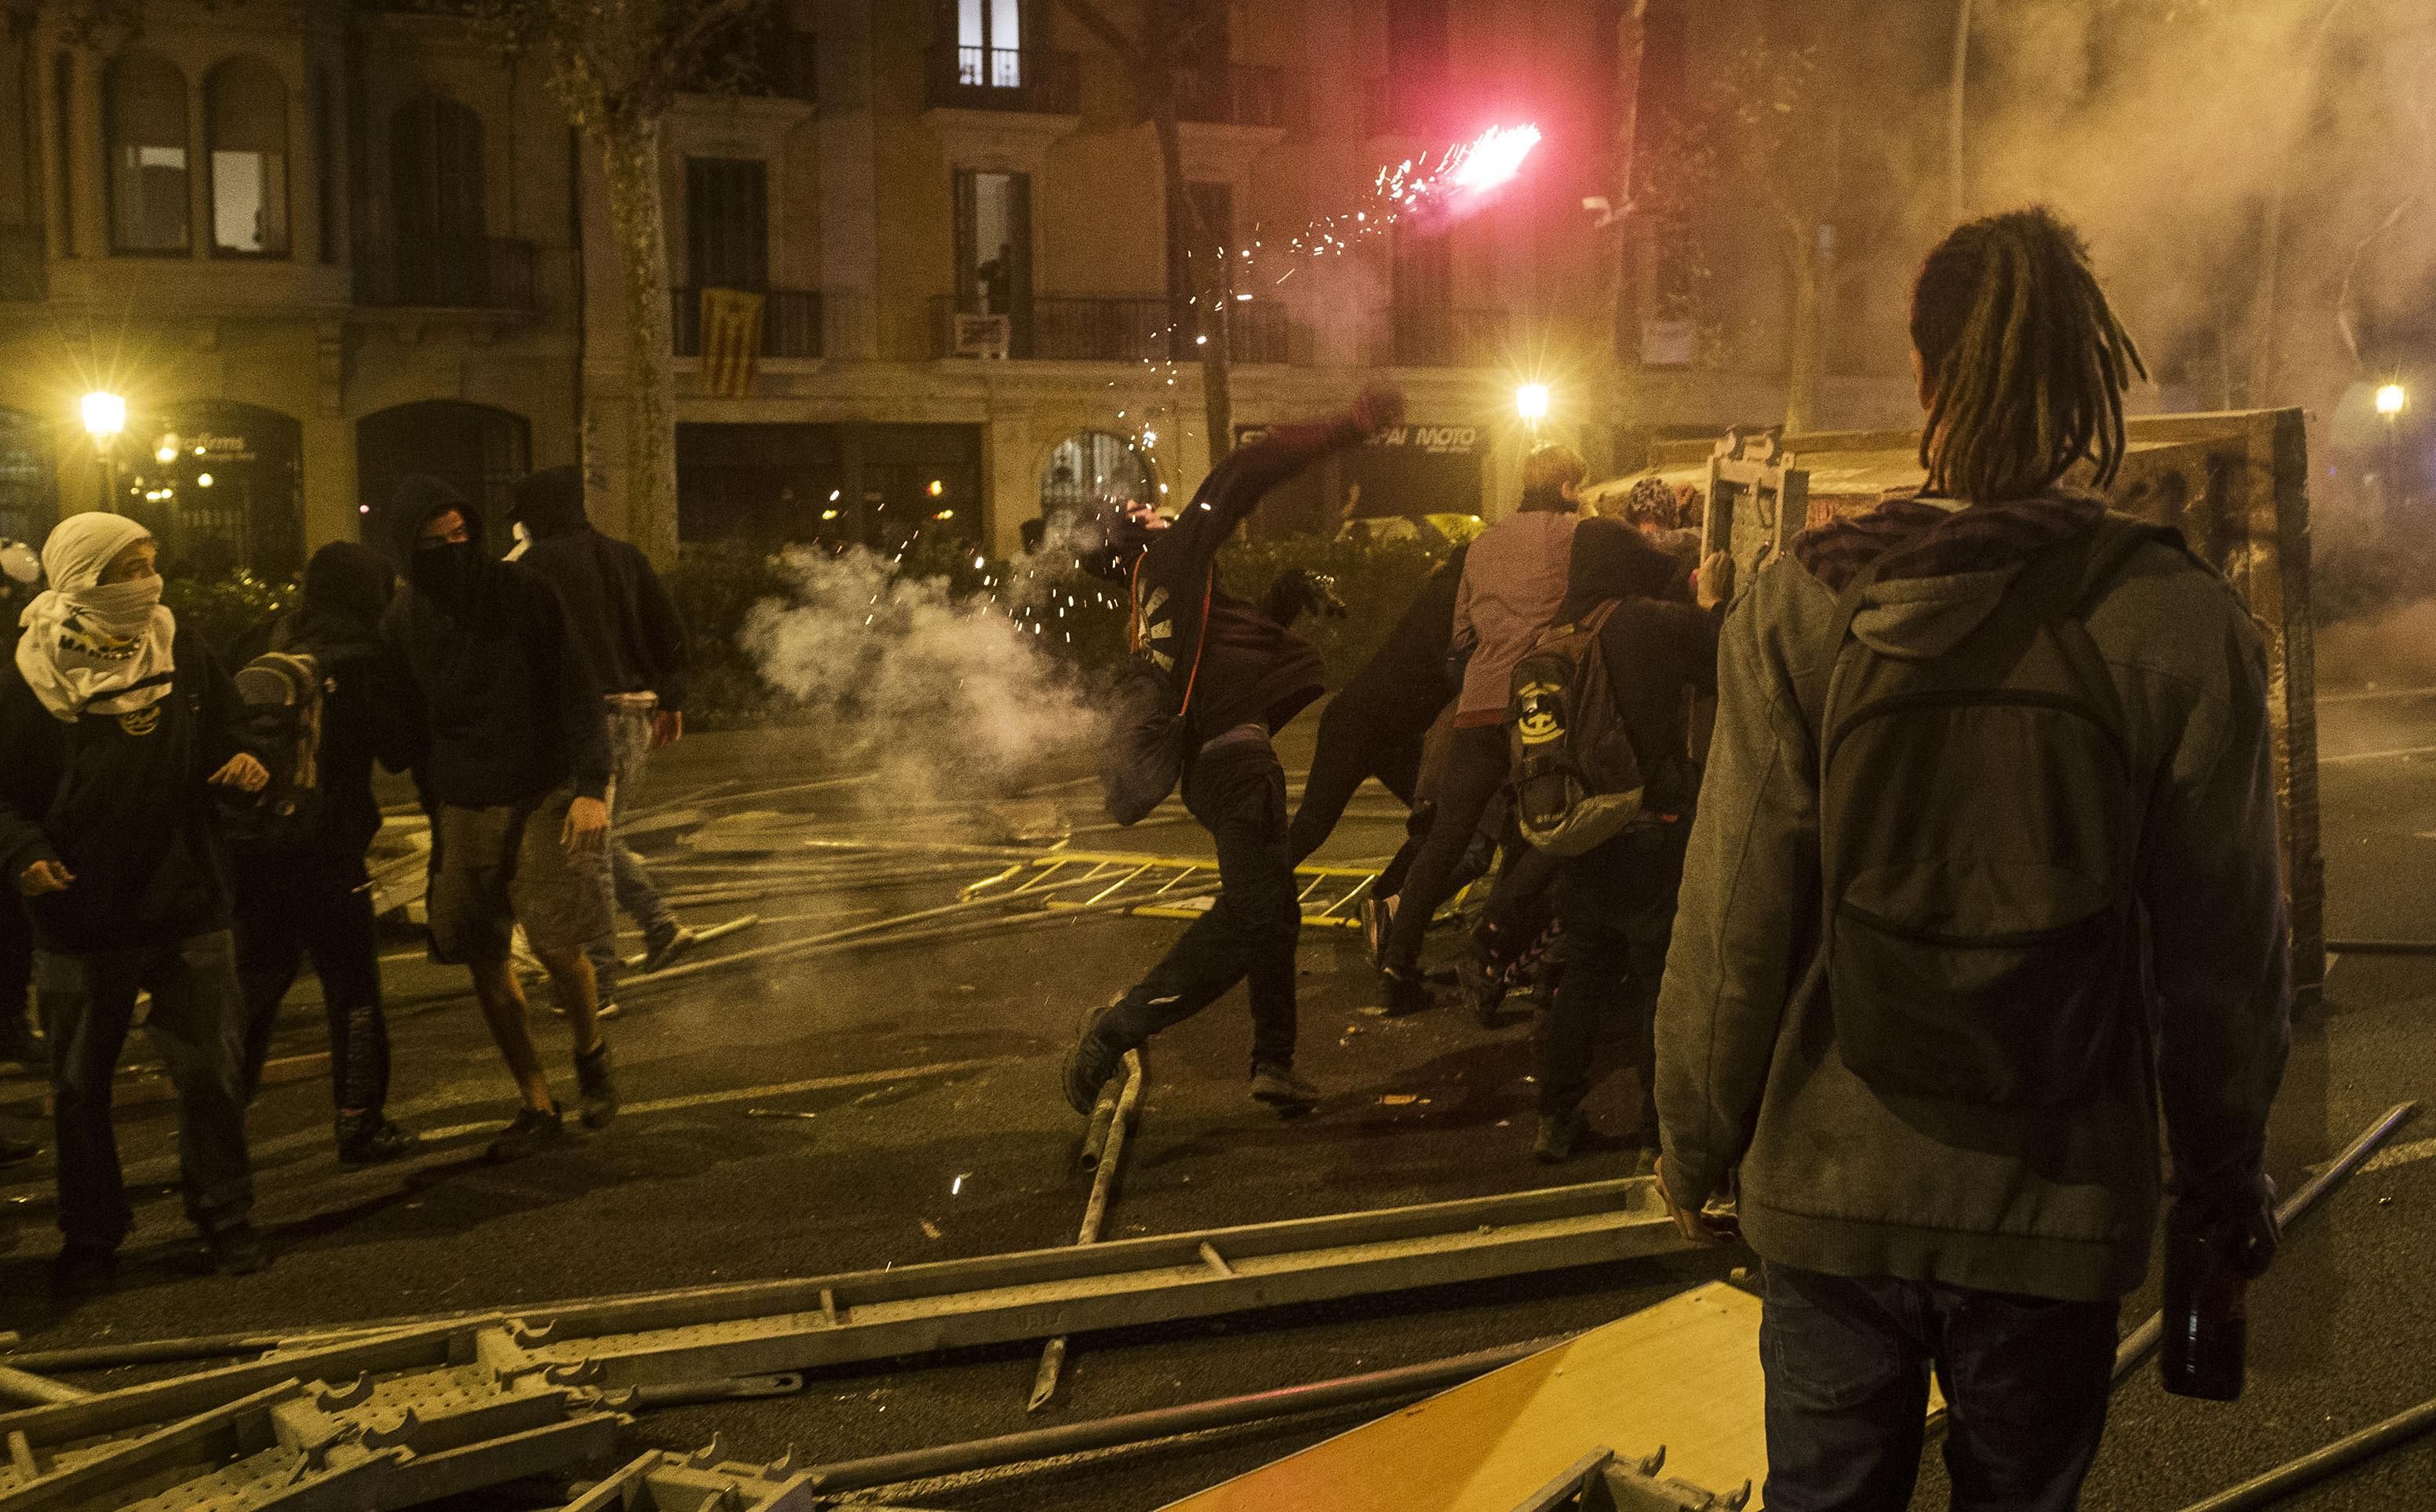 Протести в Барселоні 2019 – відео та фото протестів в Каталонії